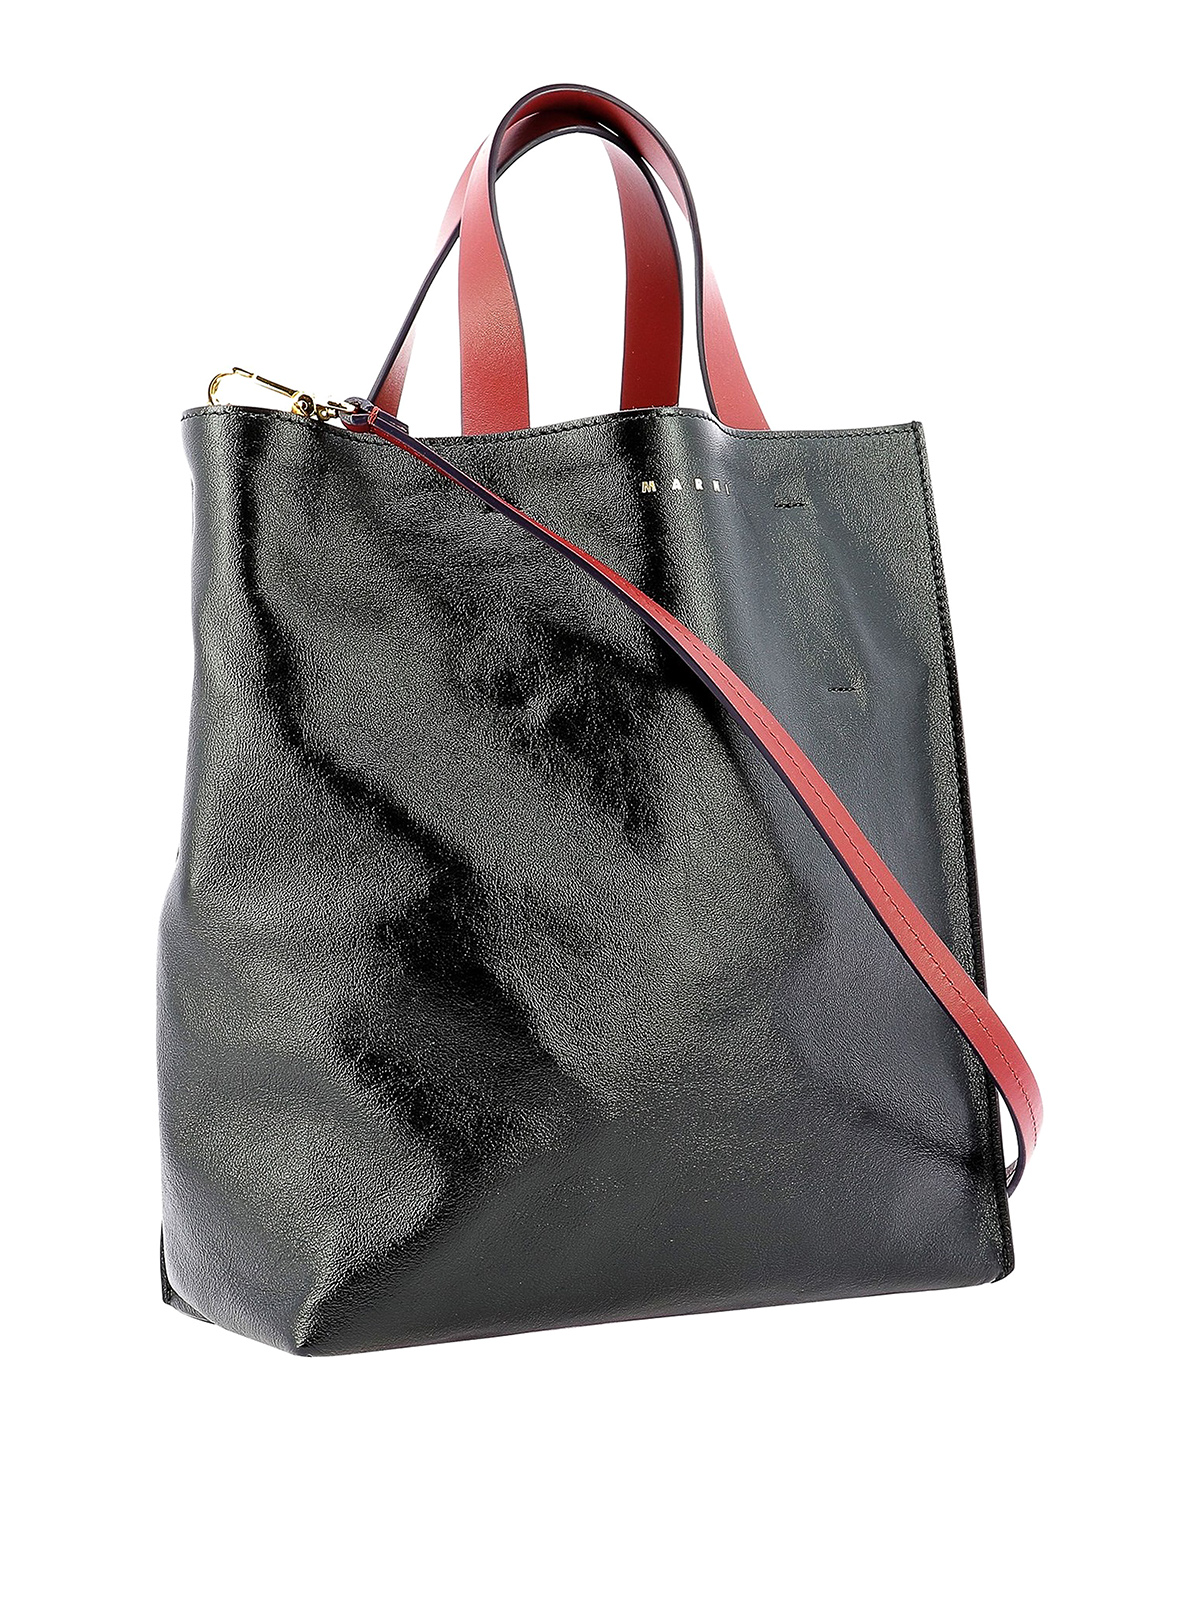 Marni Teal Snakeskin Leather Large Tote Shoulder Handbag Satchel